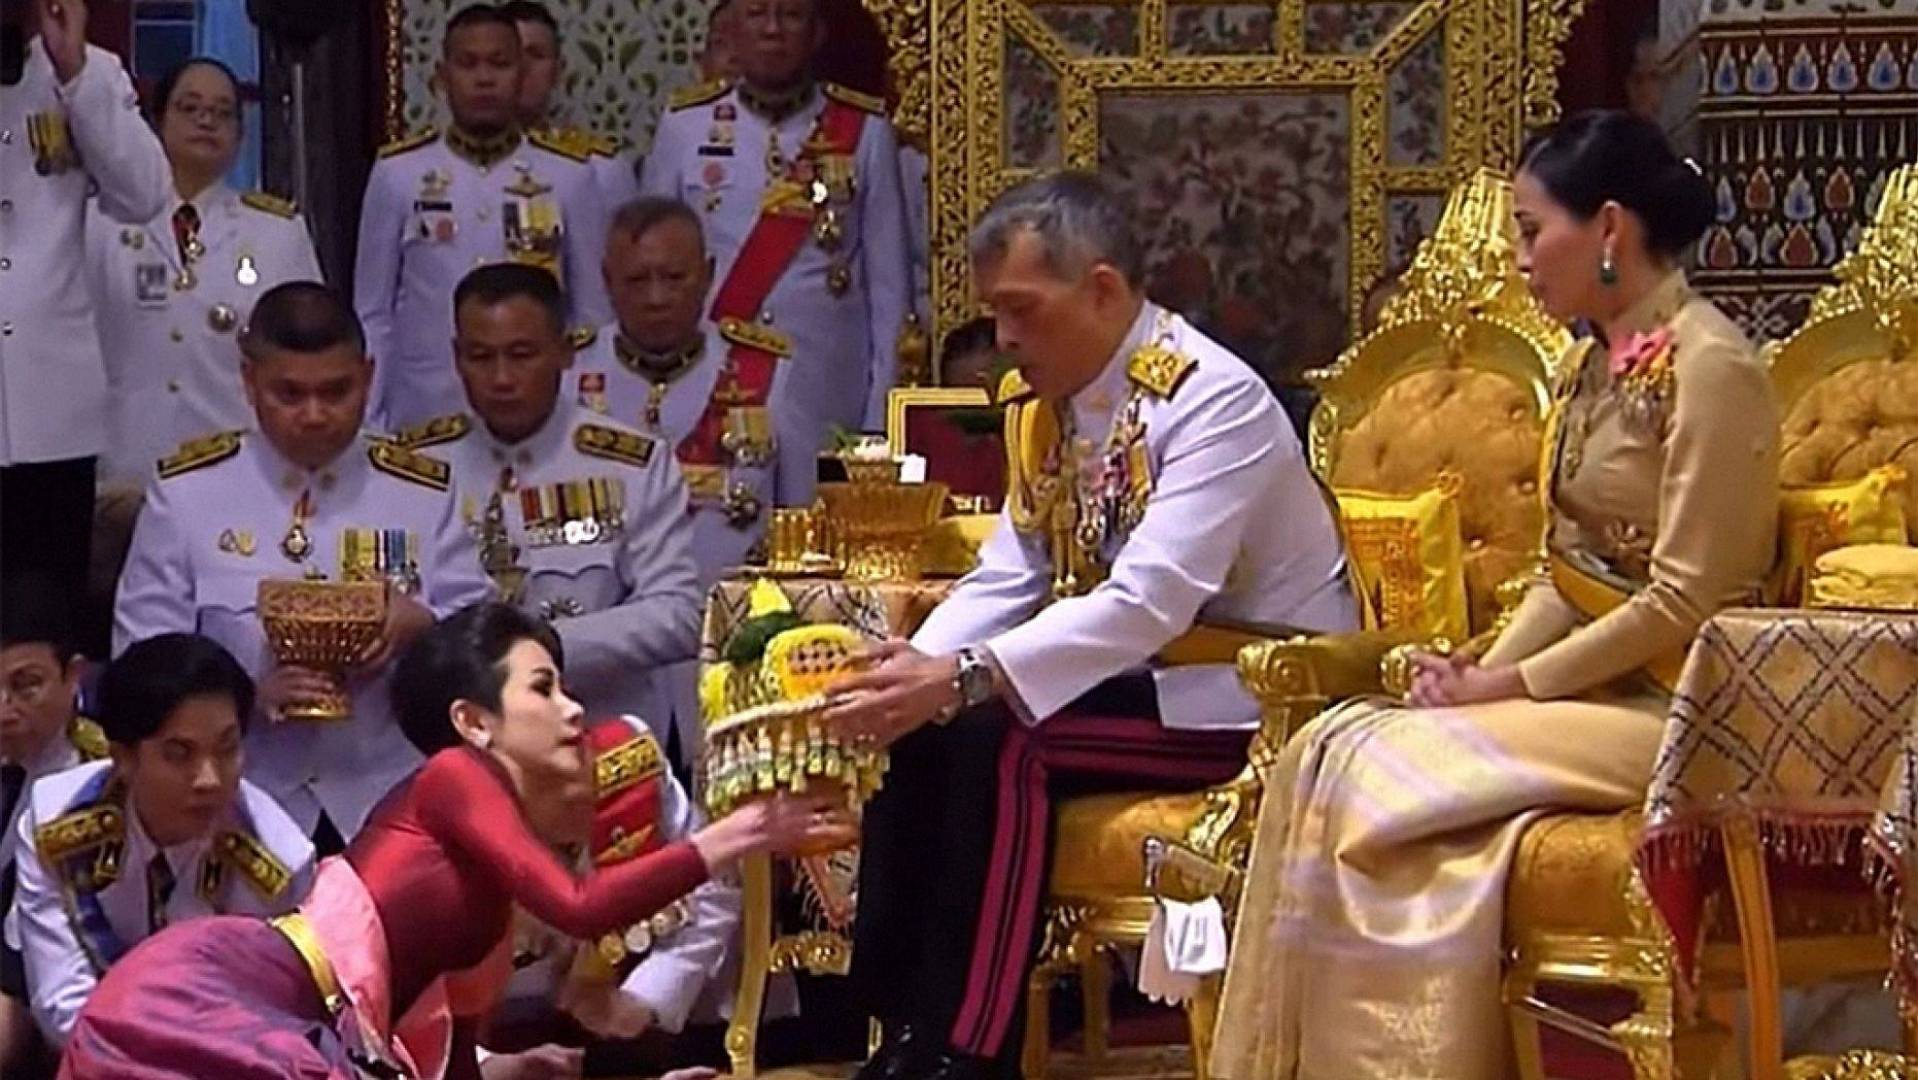 ملك تايلاند زاد الثانية! 